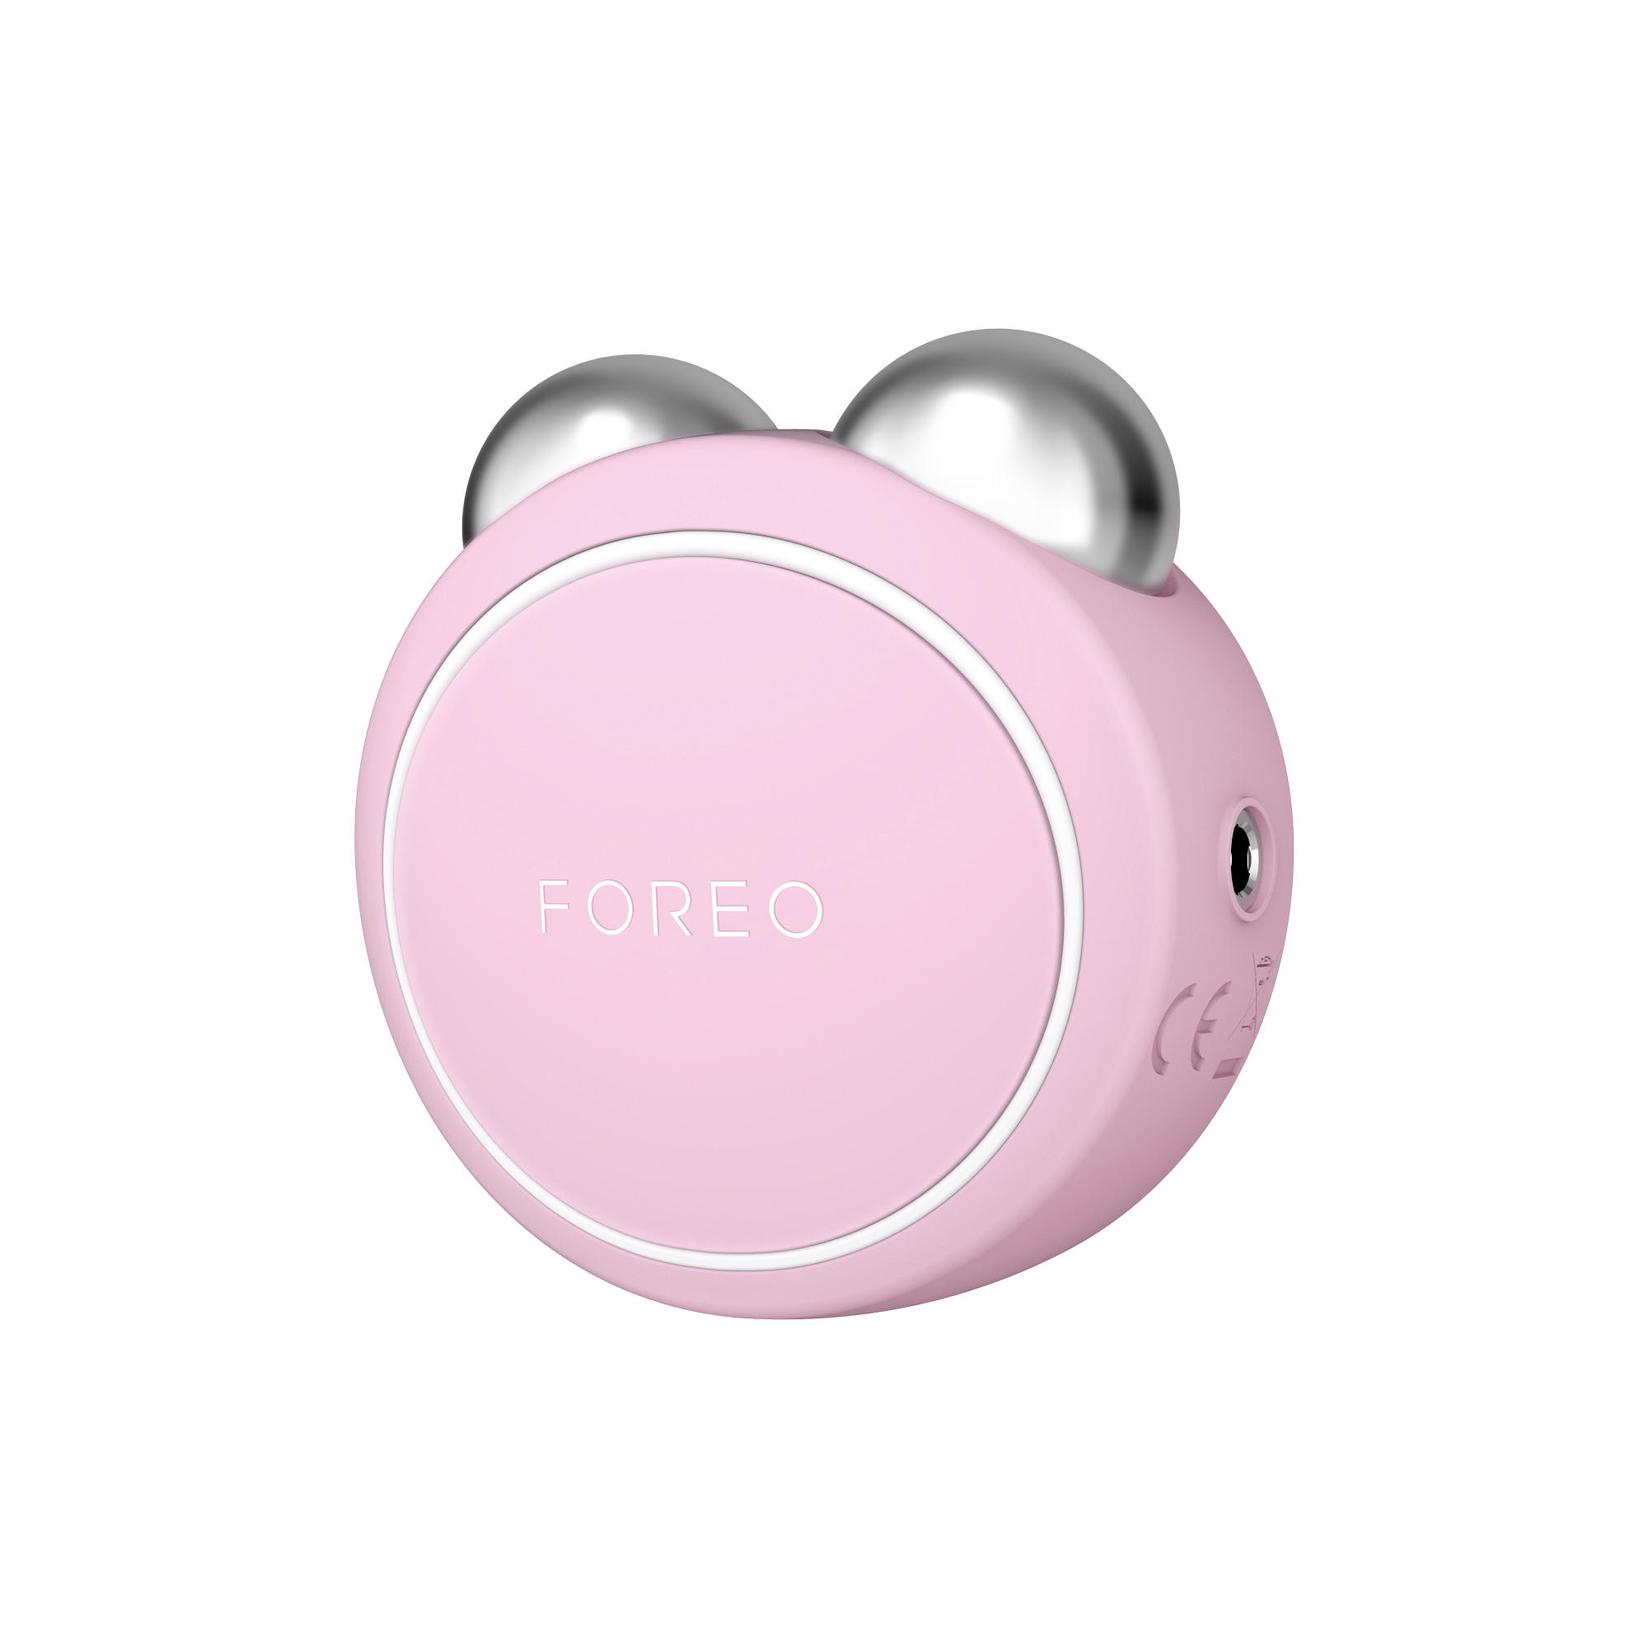 Slike FOREO BEAR Mini Pearl Pink mikrostrujni uređaj za učvršćivanje kože lica